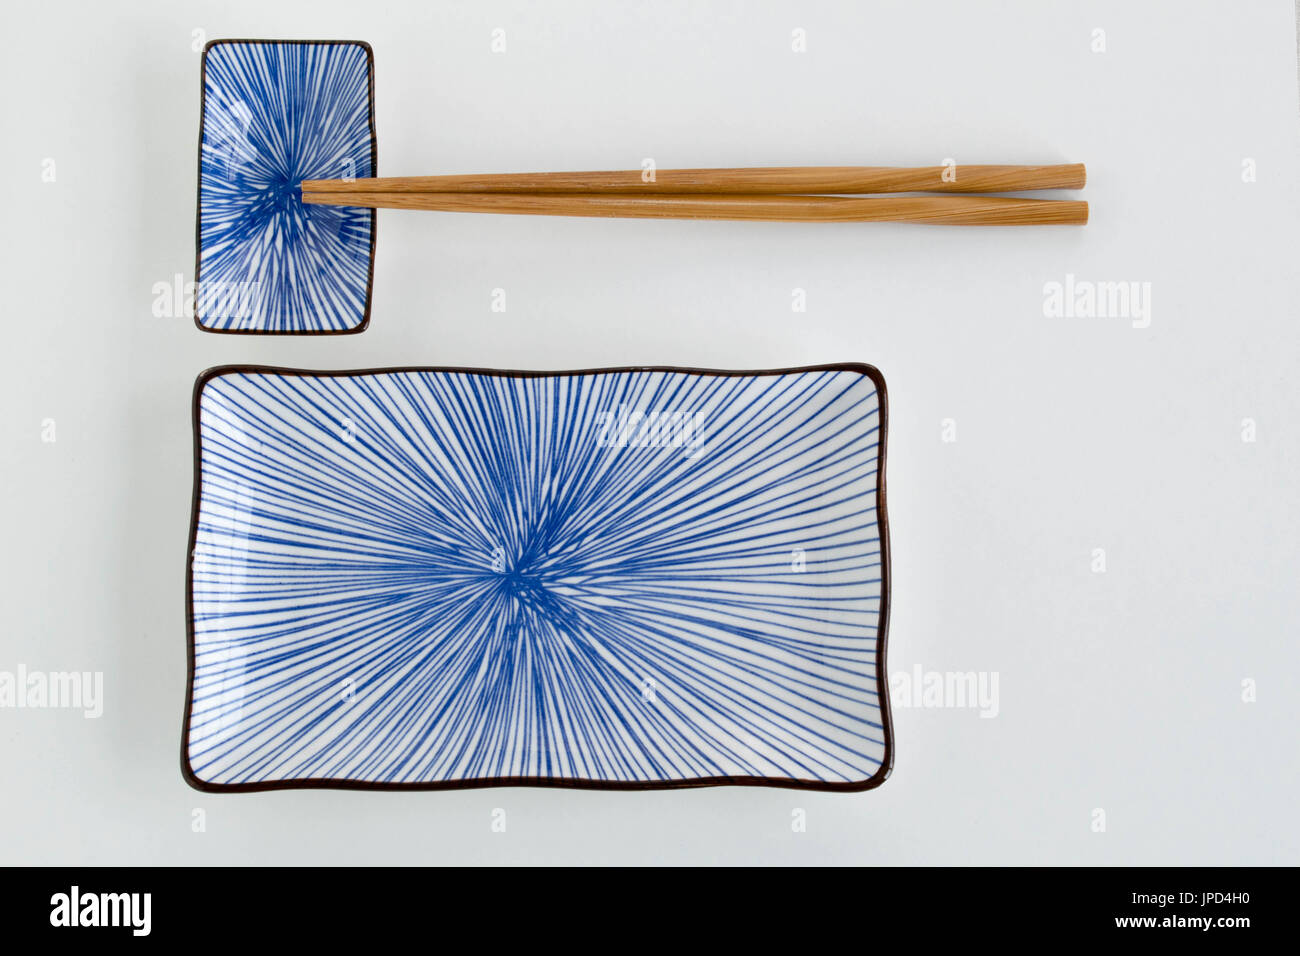 Une photo de paysage d'un jeu de plaques de sushi en céramique avec un design bleu Banque D'Images